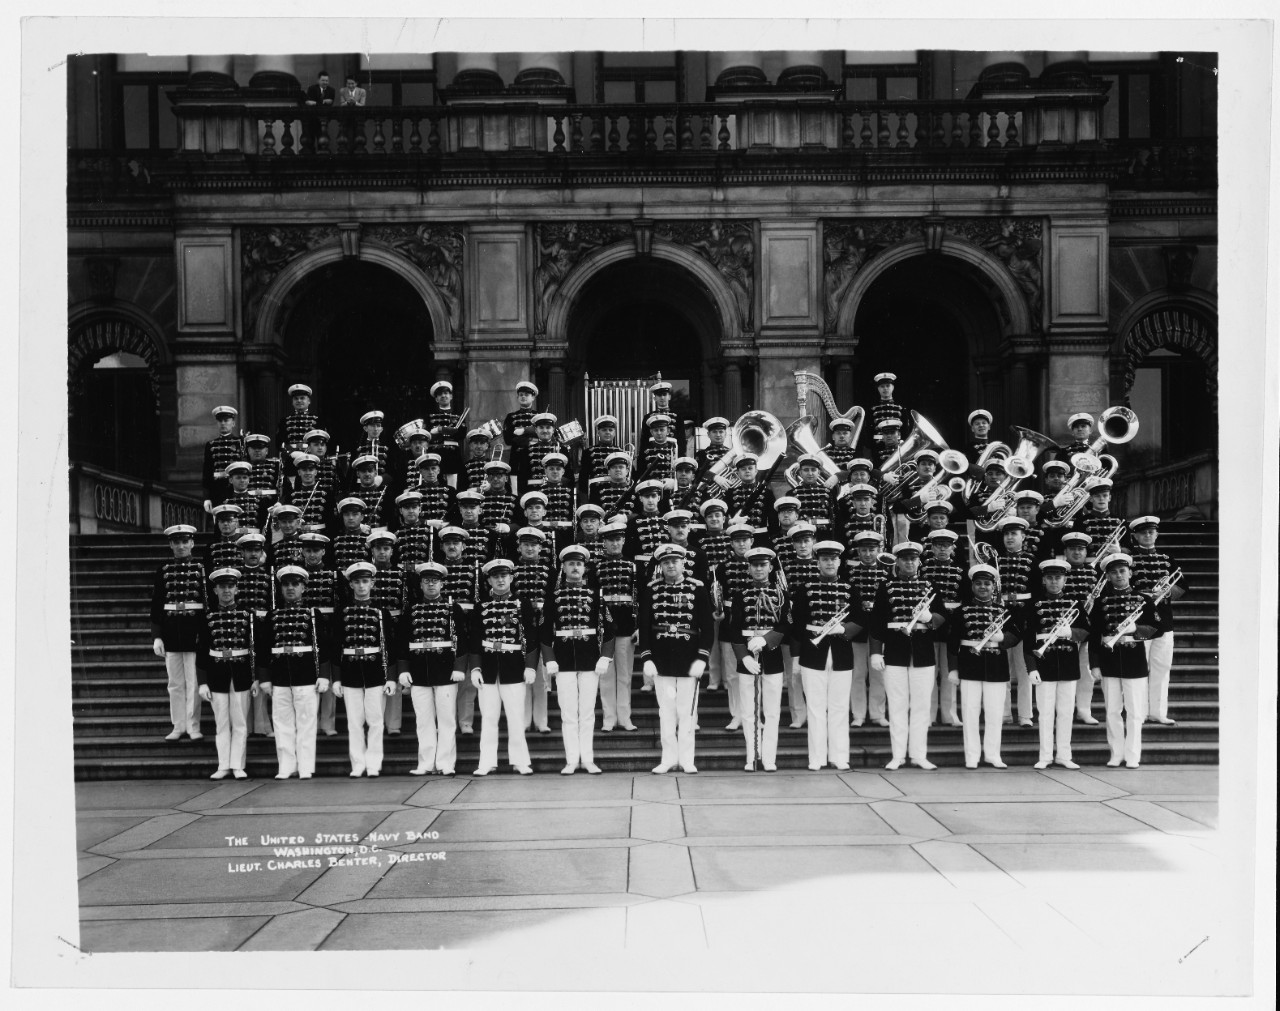 The United States Navy Band, Washington, D.C.